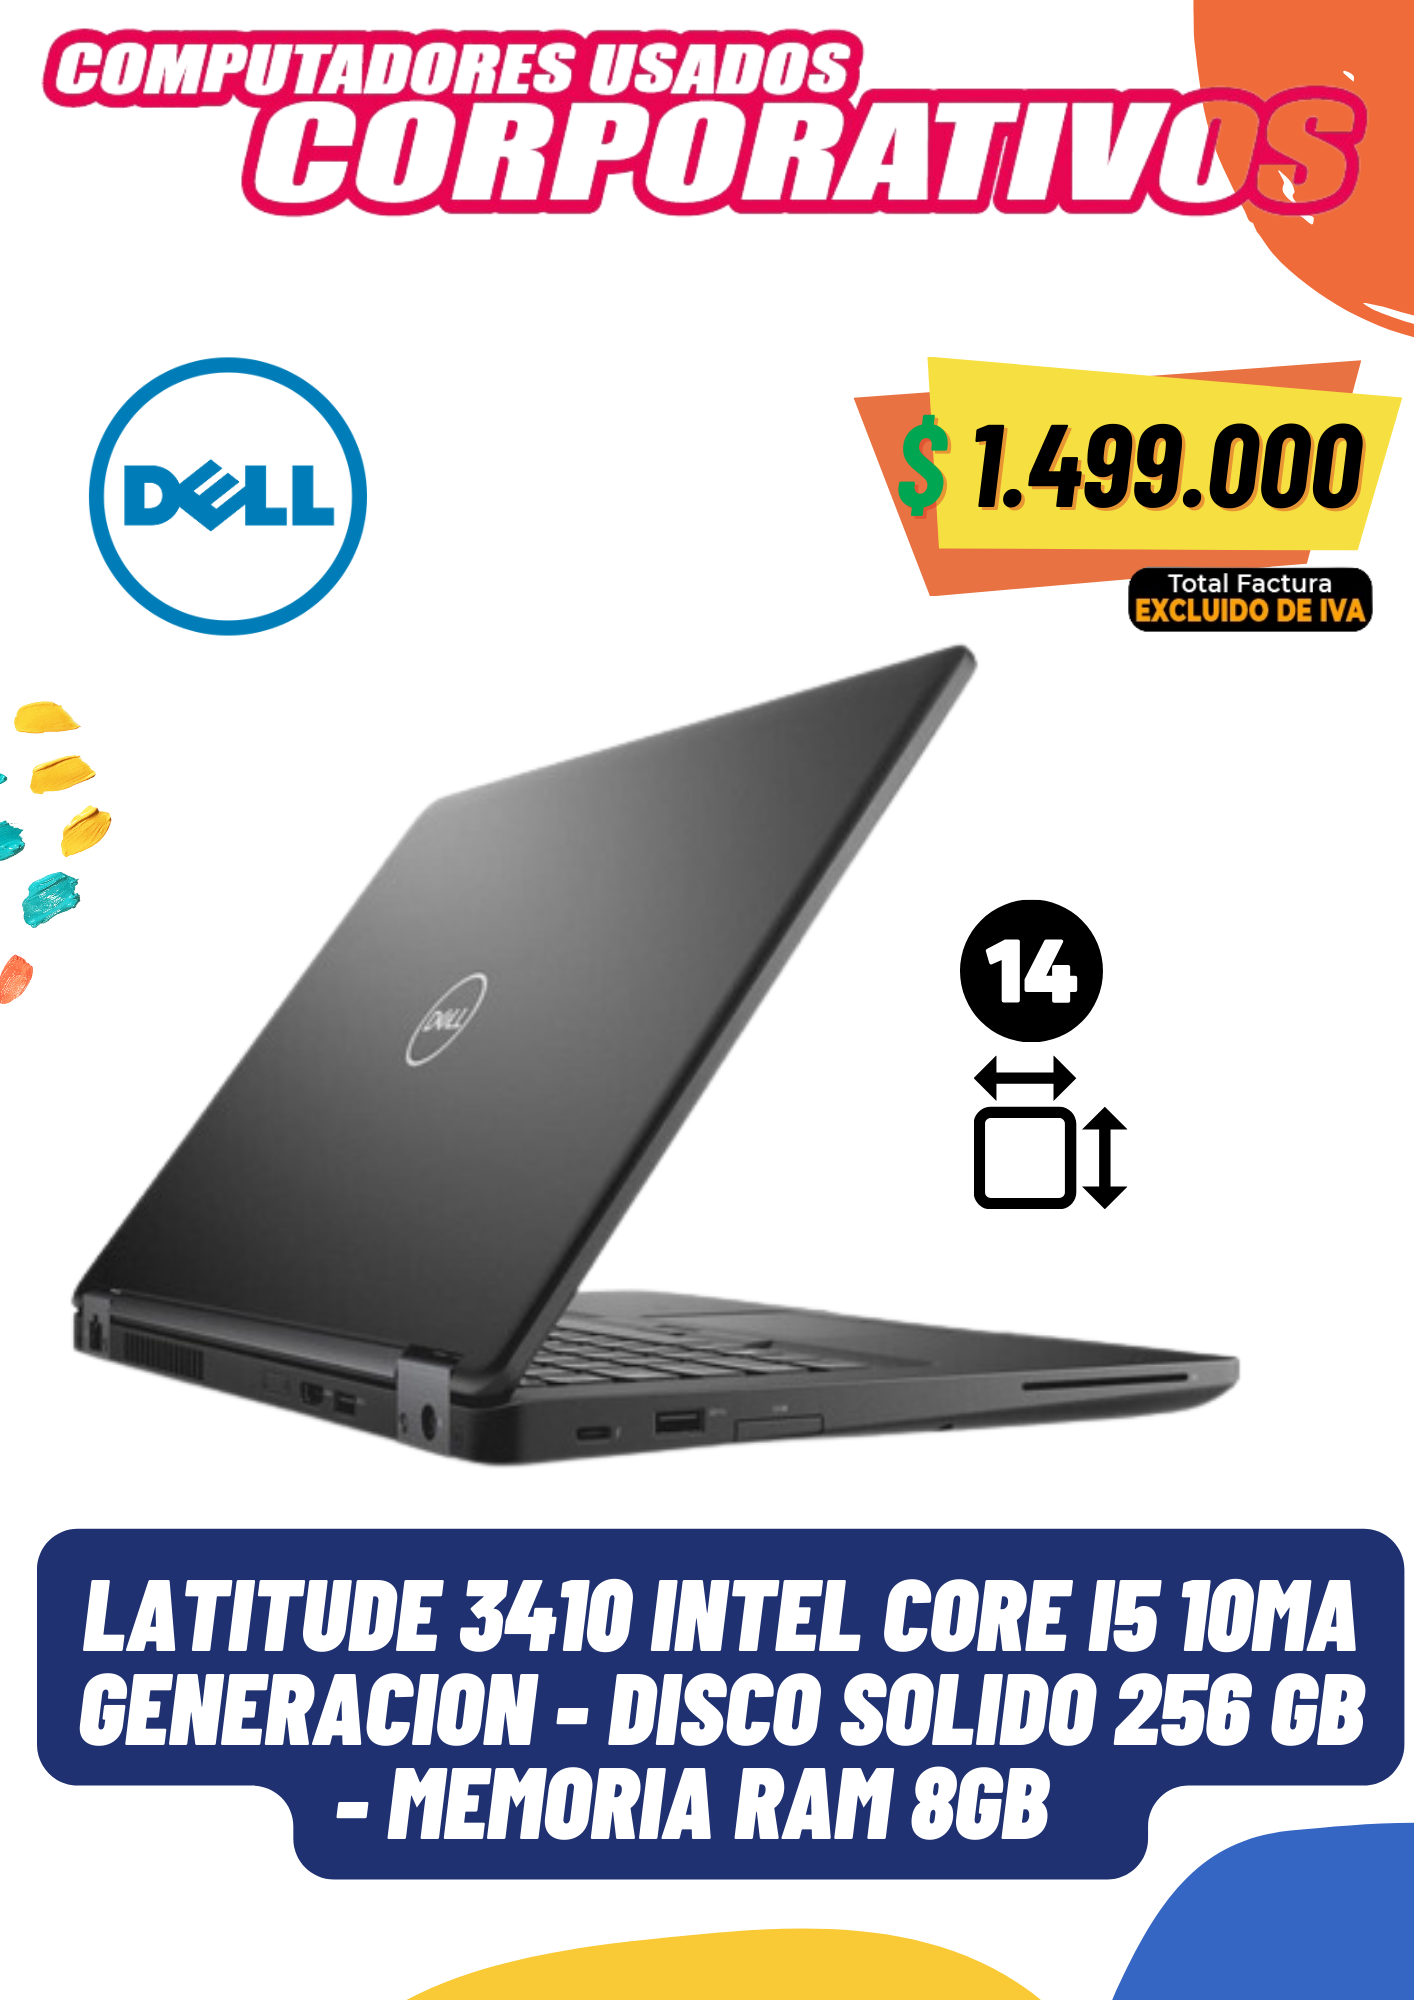 Dell 3410 Intel® Core™ I5 10MA generación